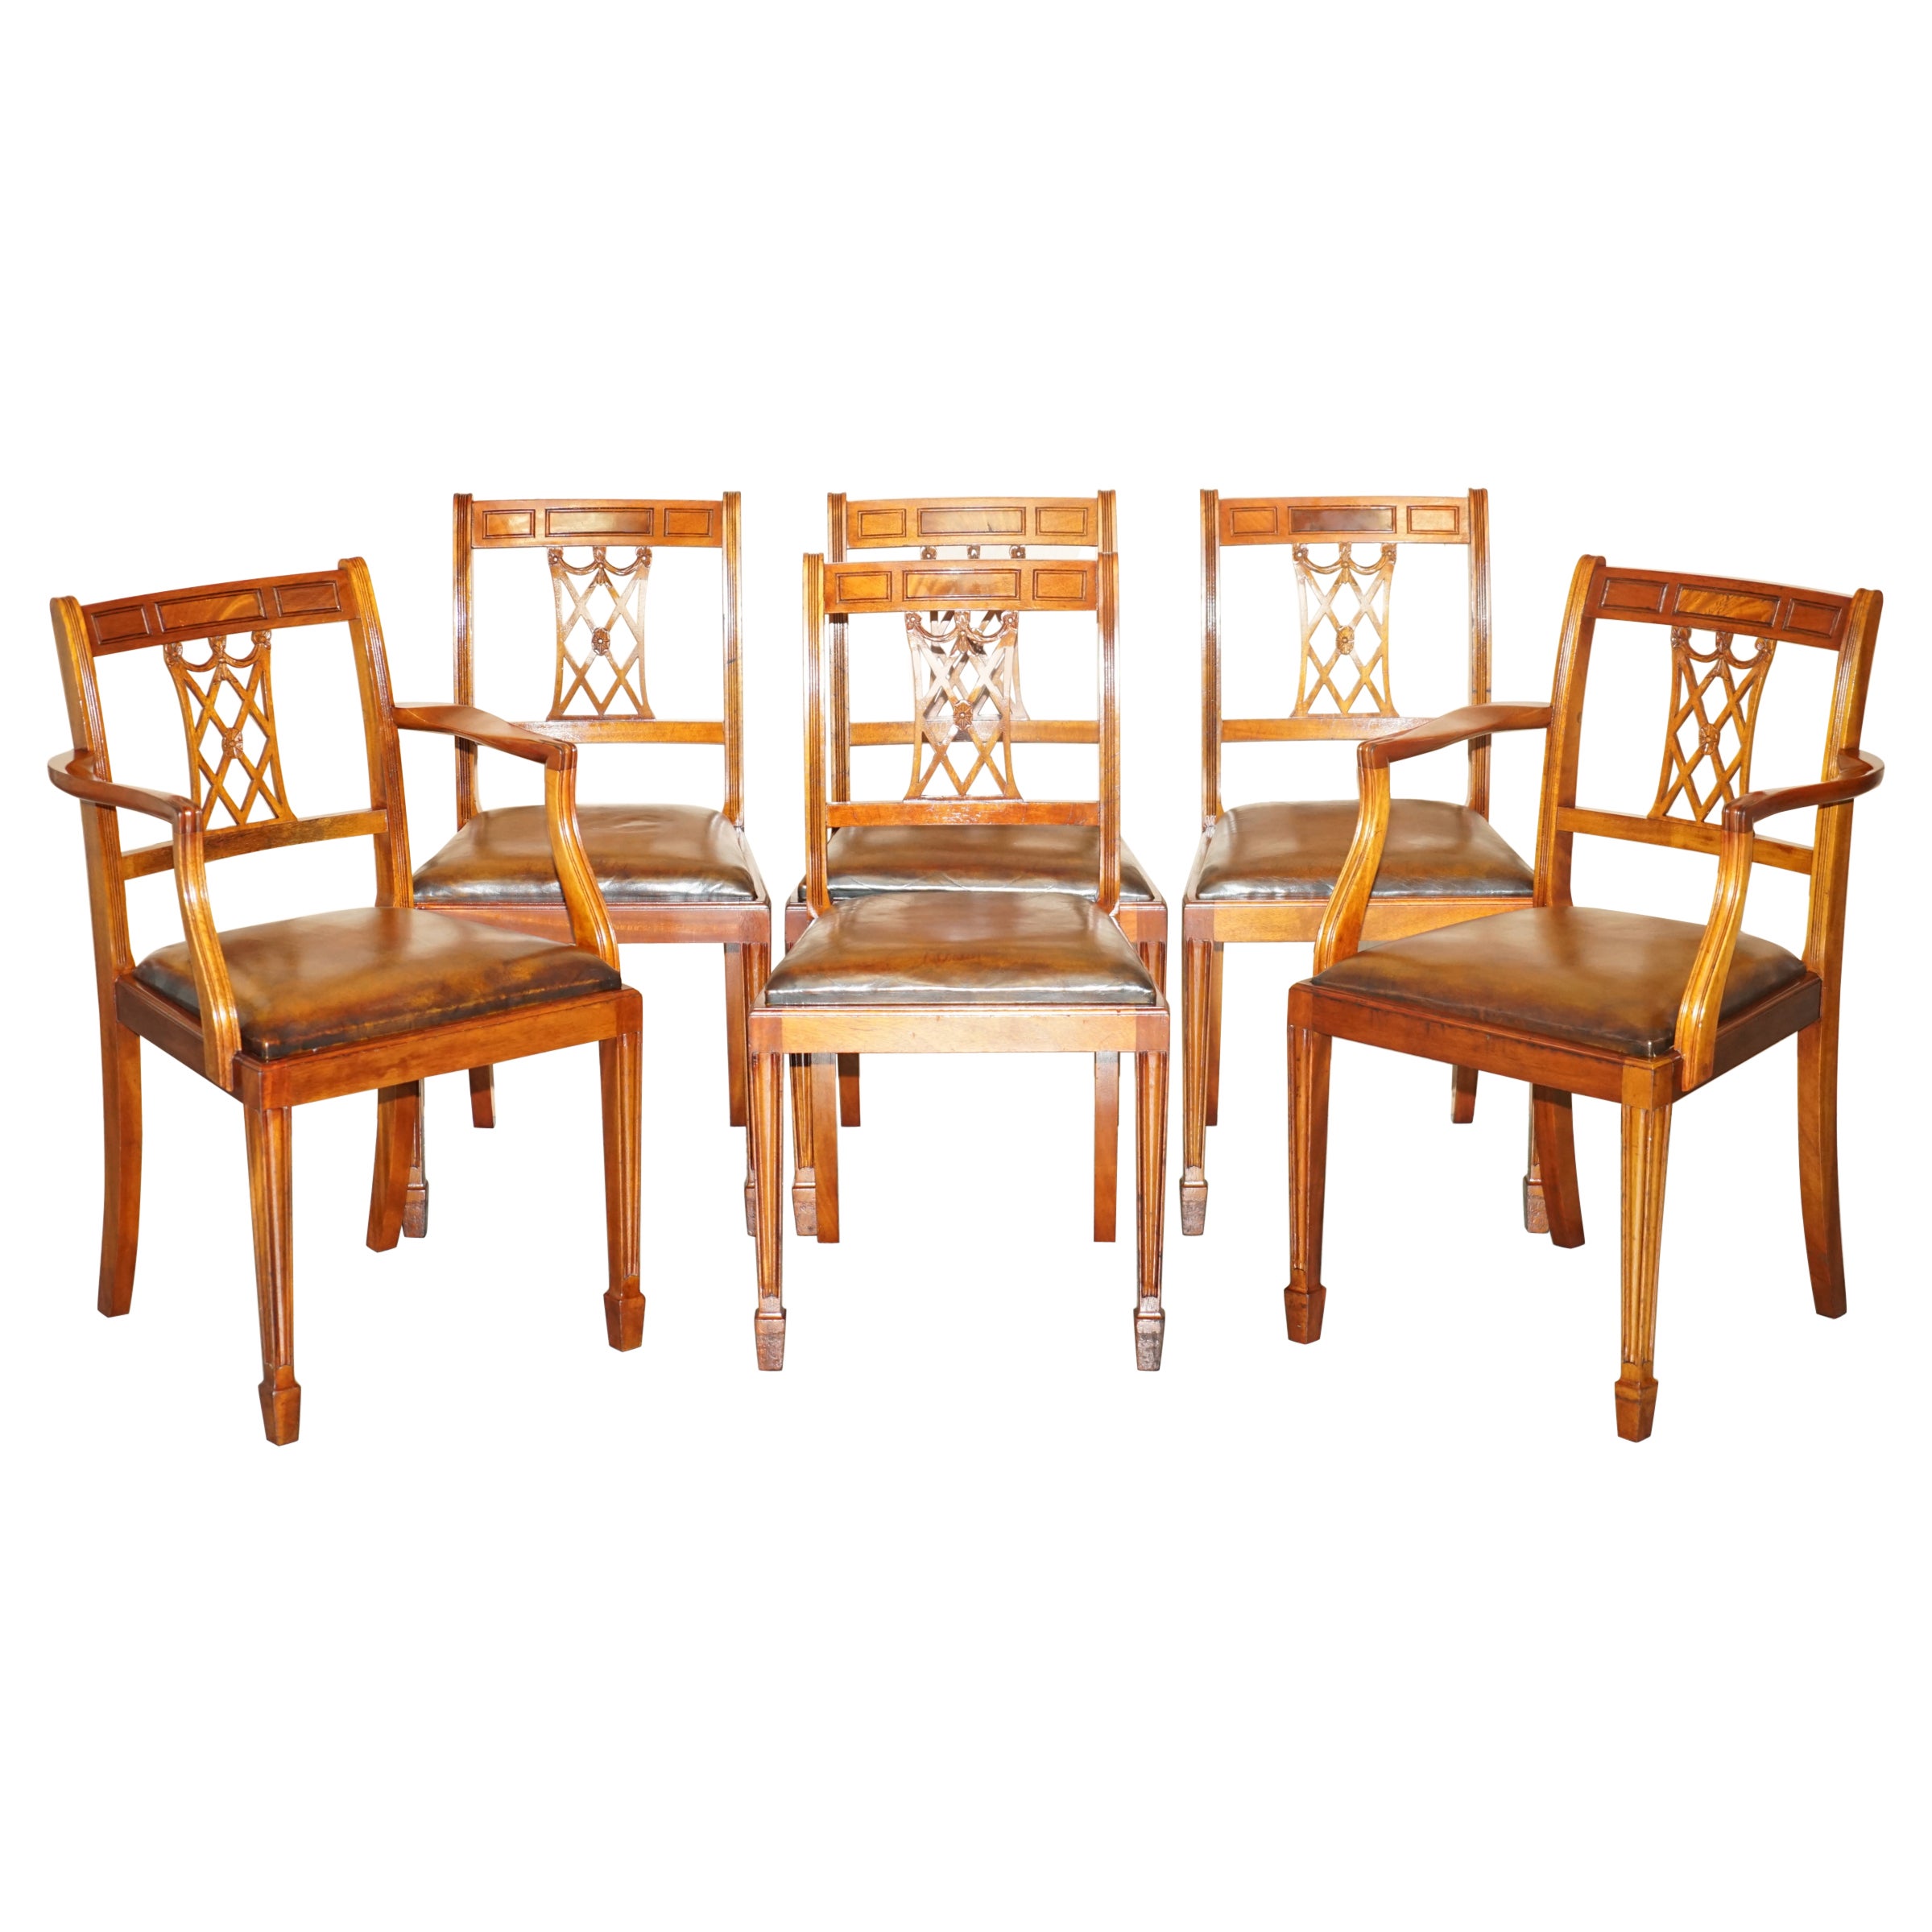 Sechs Vintage restauriert Hand gefärbt Brown Leder Hand geschnitzt Rahmen Esszimmerstühle